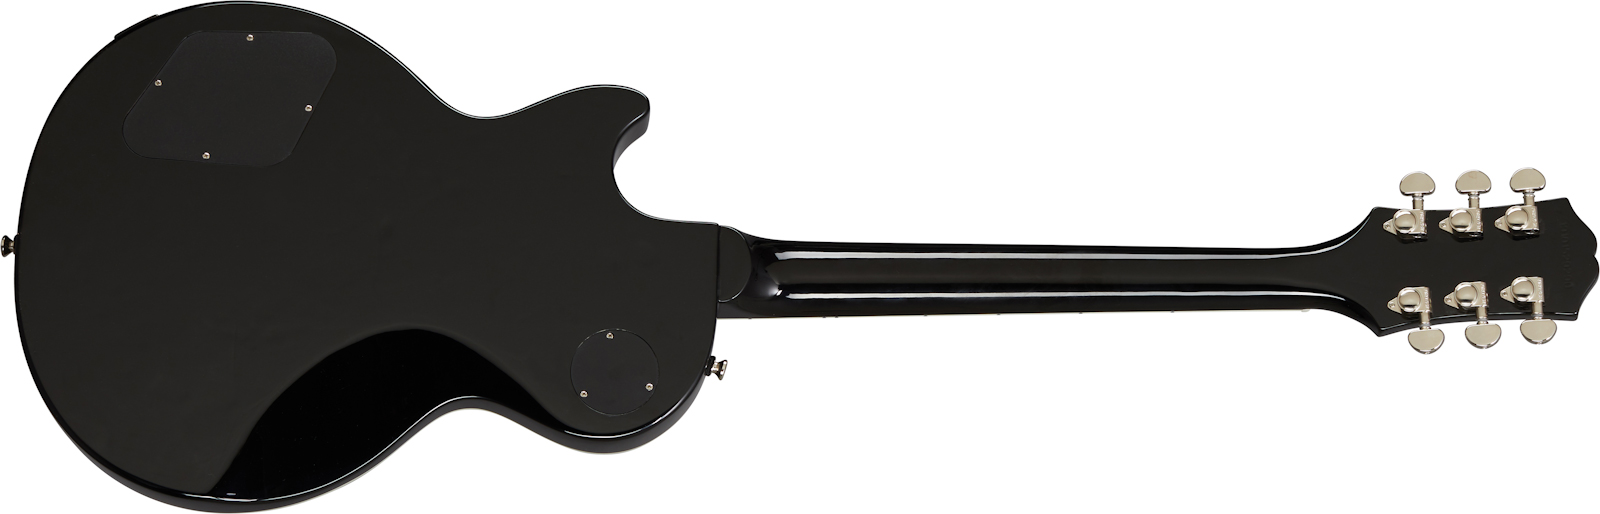 Epiphone Les Paul Muse Modern 2h Ht Lau - Jet Black Metallic - Guitare Électrique Single Cut - Variation 2